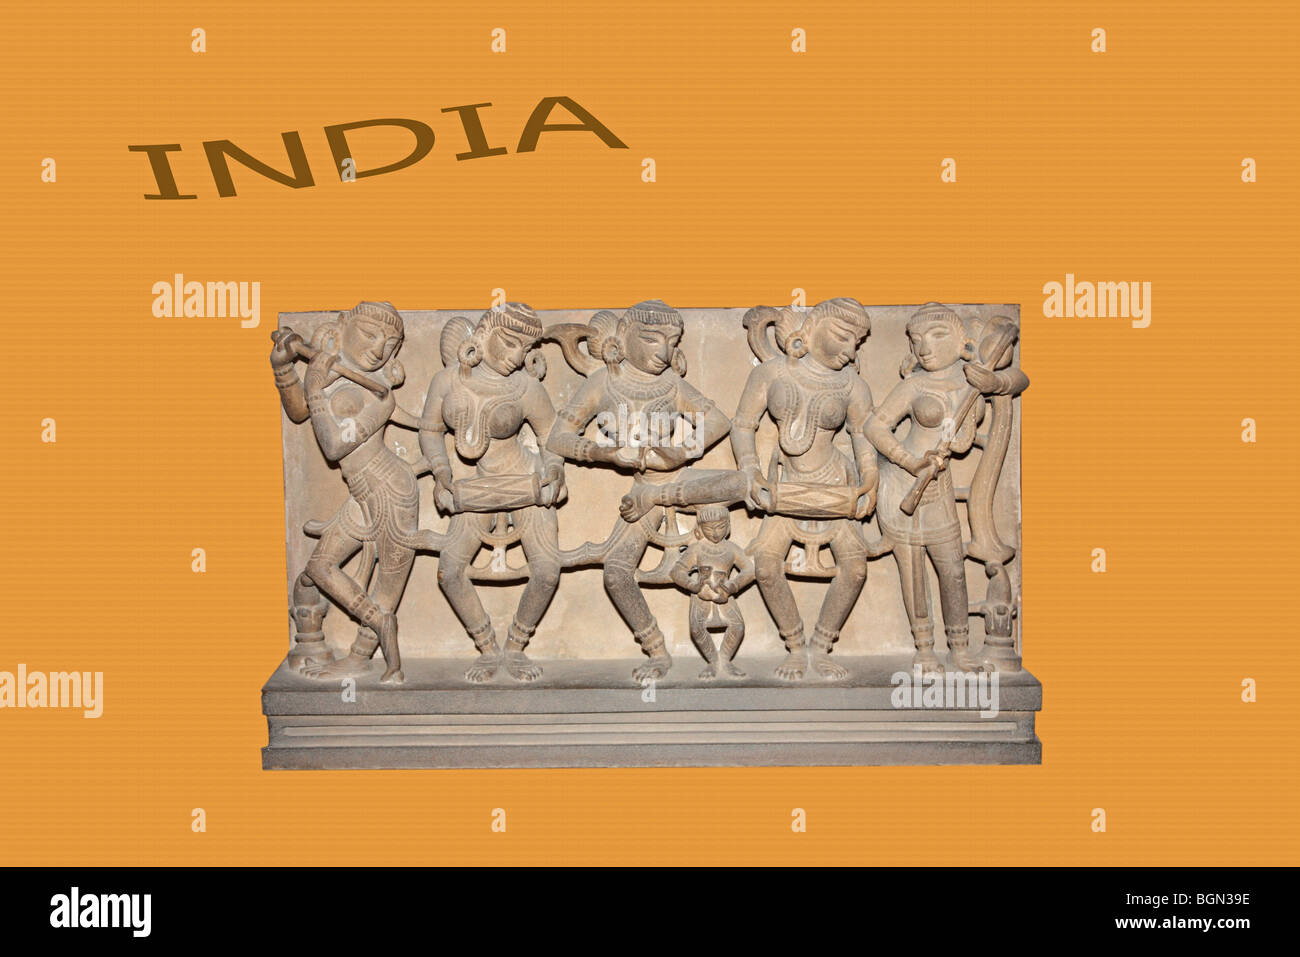 Pain sur la publicité annonce commerciale de la culture indienne. Banque D'Images